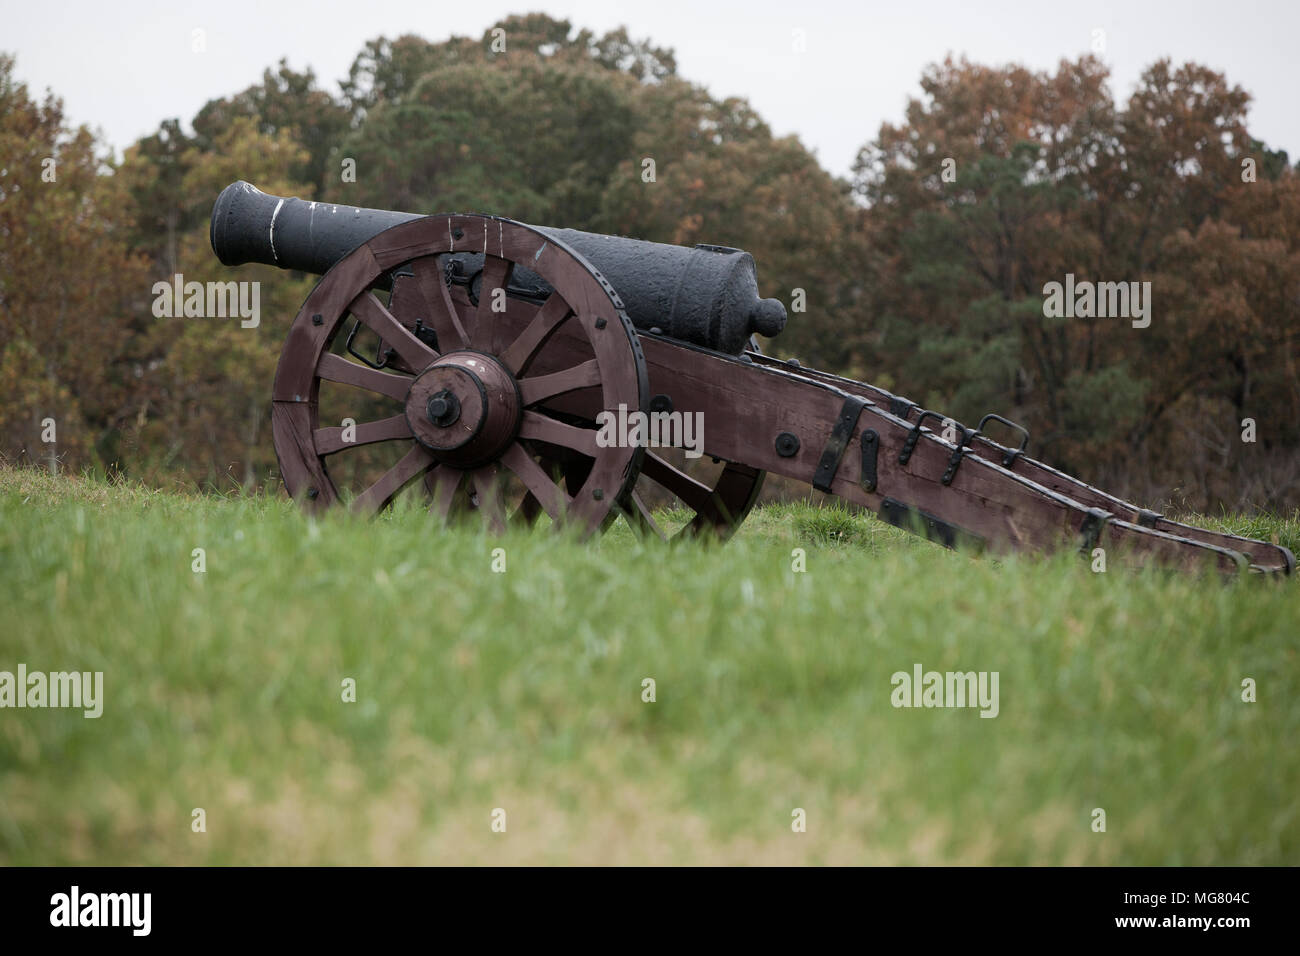 La guerre révolutionnaire cannon affichée sur le domaine de l'historique de la bataille de Yorktown pendant la guerre de la révolution américaine Banque D'Images